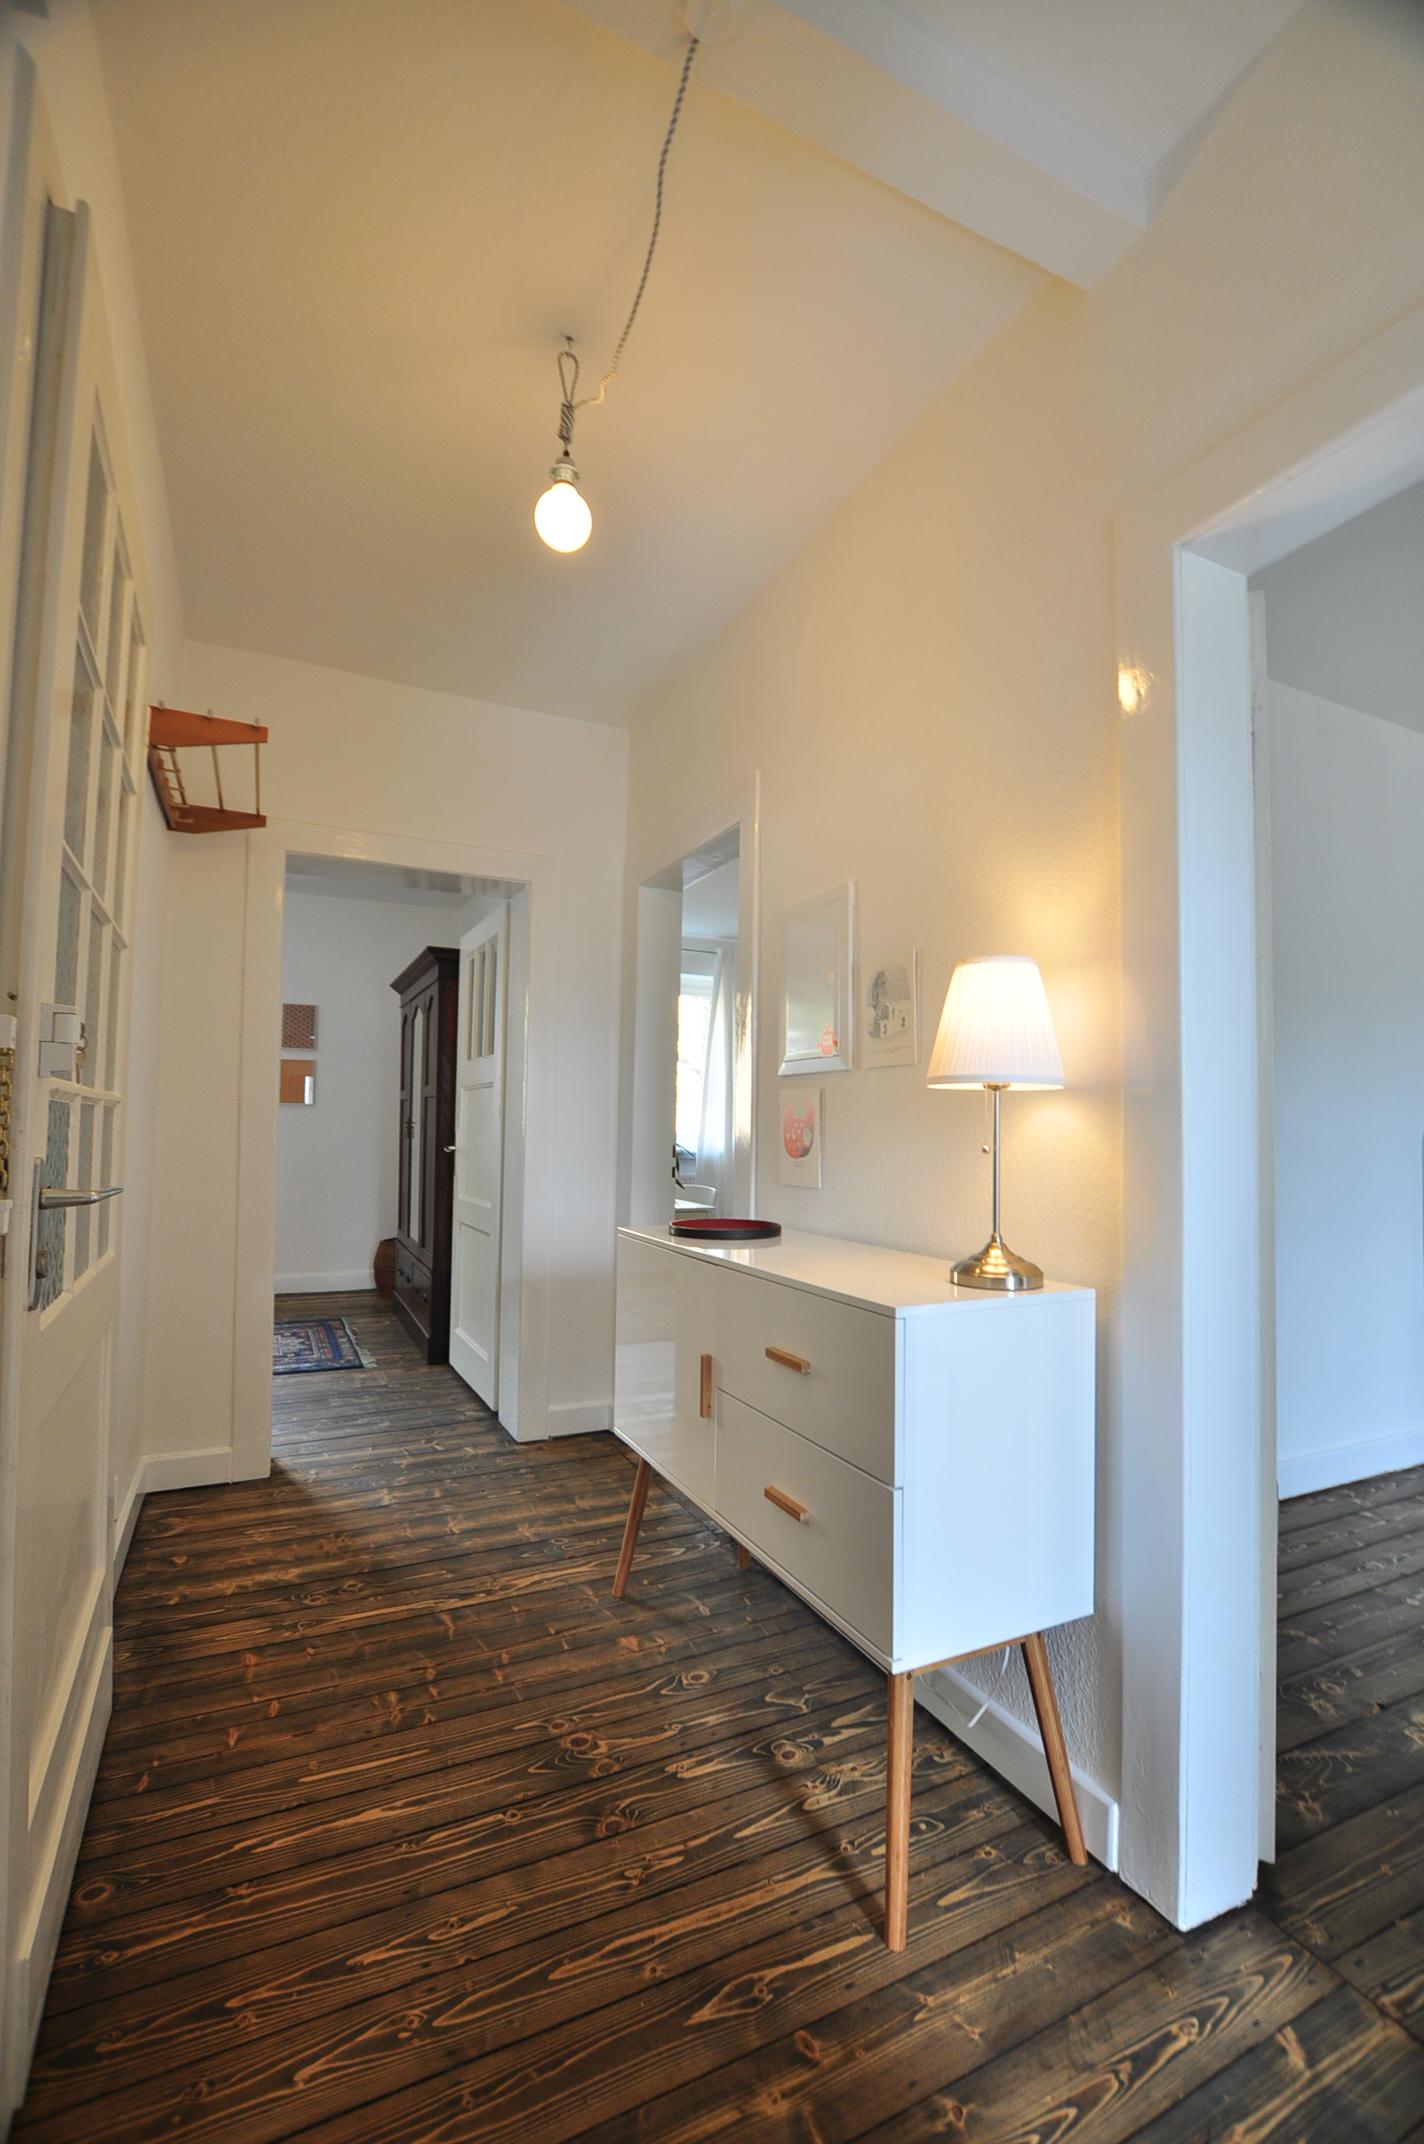 Flur _ möblierte Wohnung #sideboard #tischlampe #sanierterfluraltbau ©e-rent Agentur / Alina Edelstein